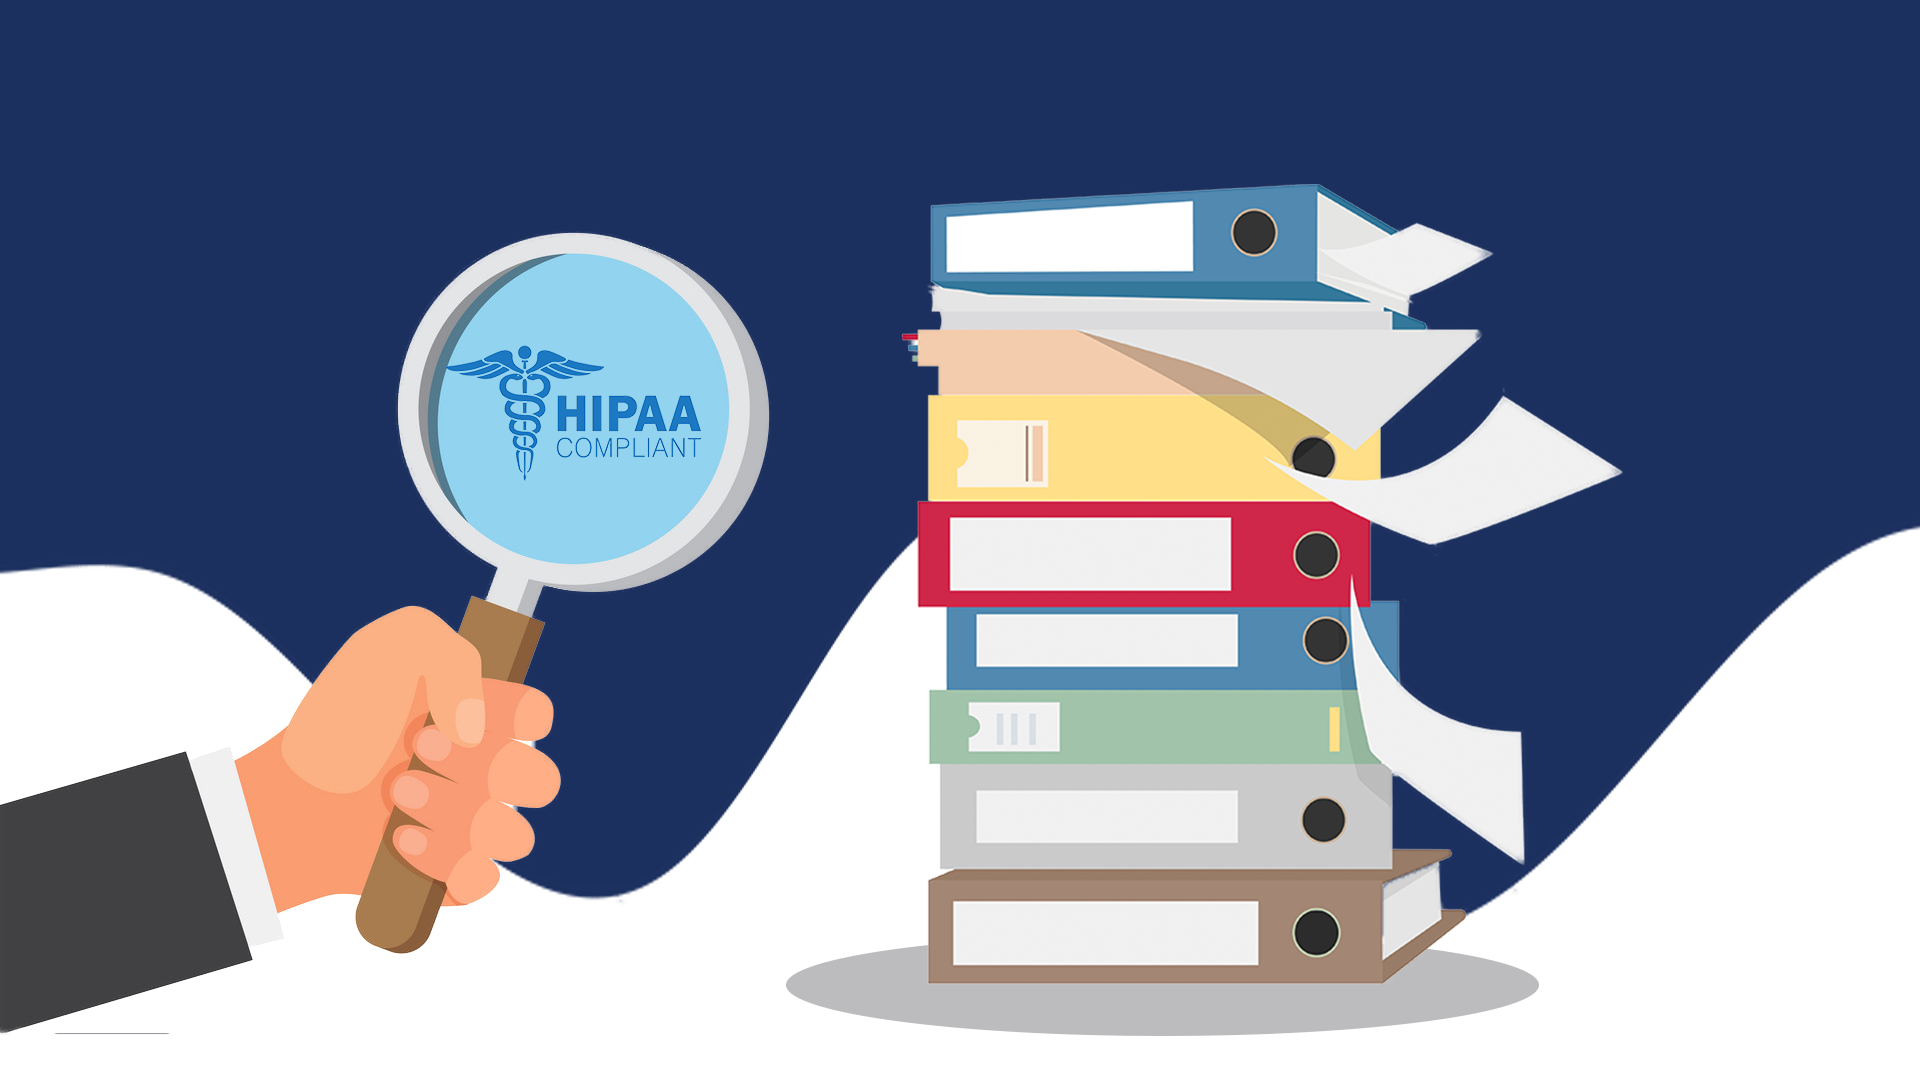 HIPAA compliant translation